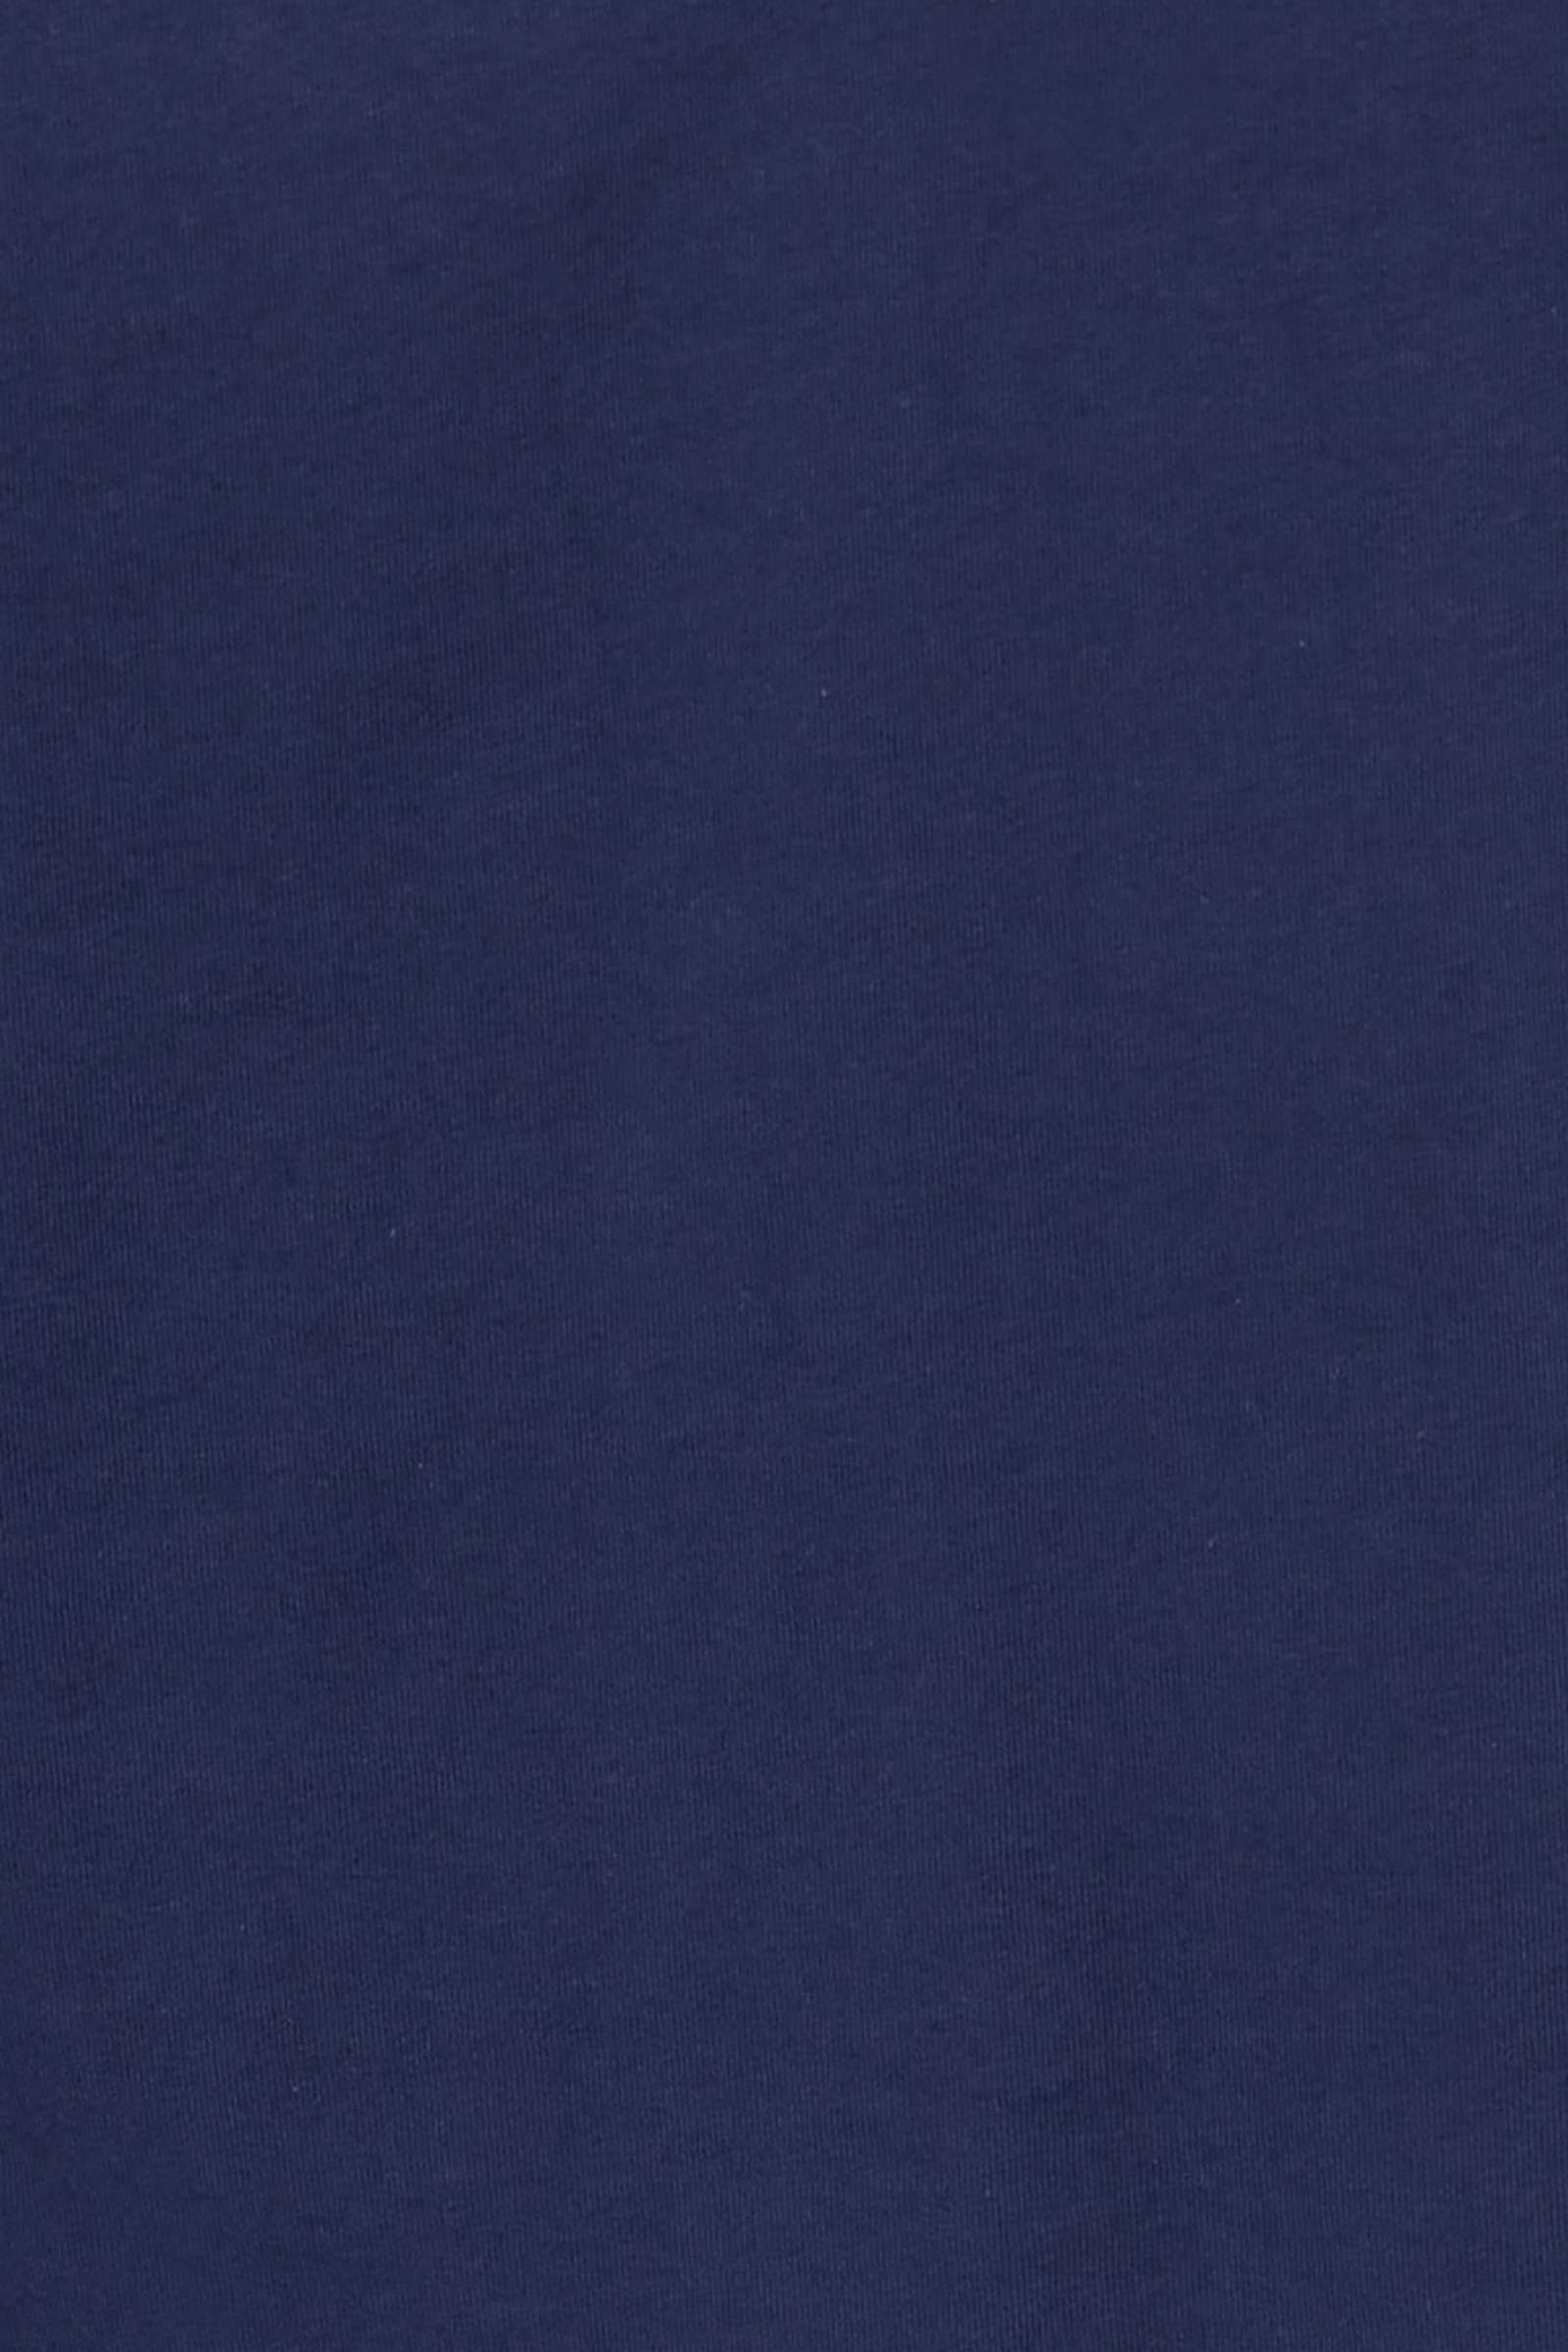 Reveler Tshirt - Sapphire - eb&ive Clothing - Top Tshirt S/S